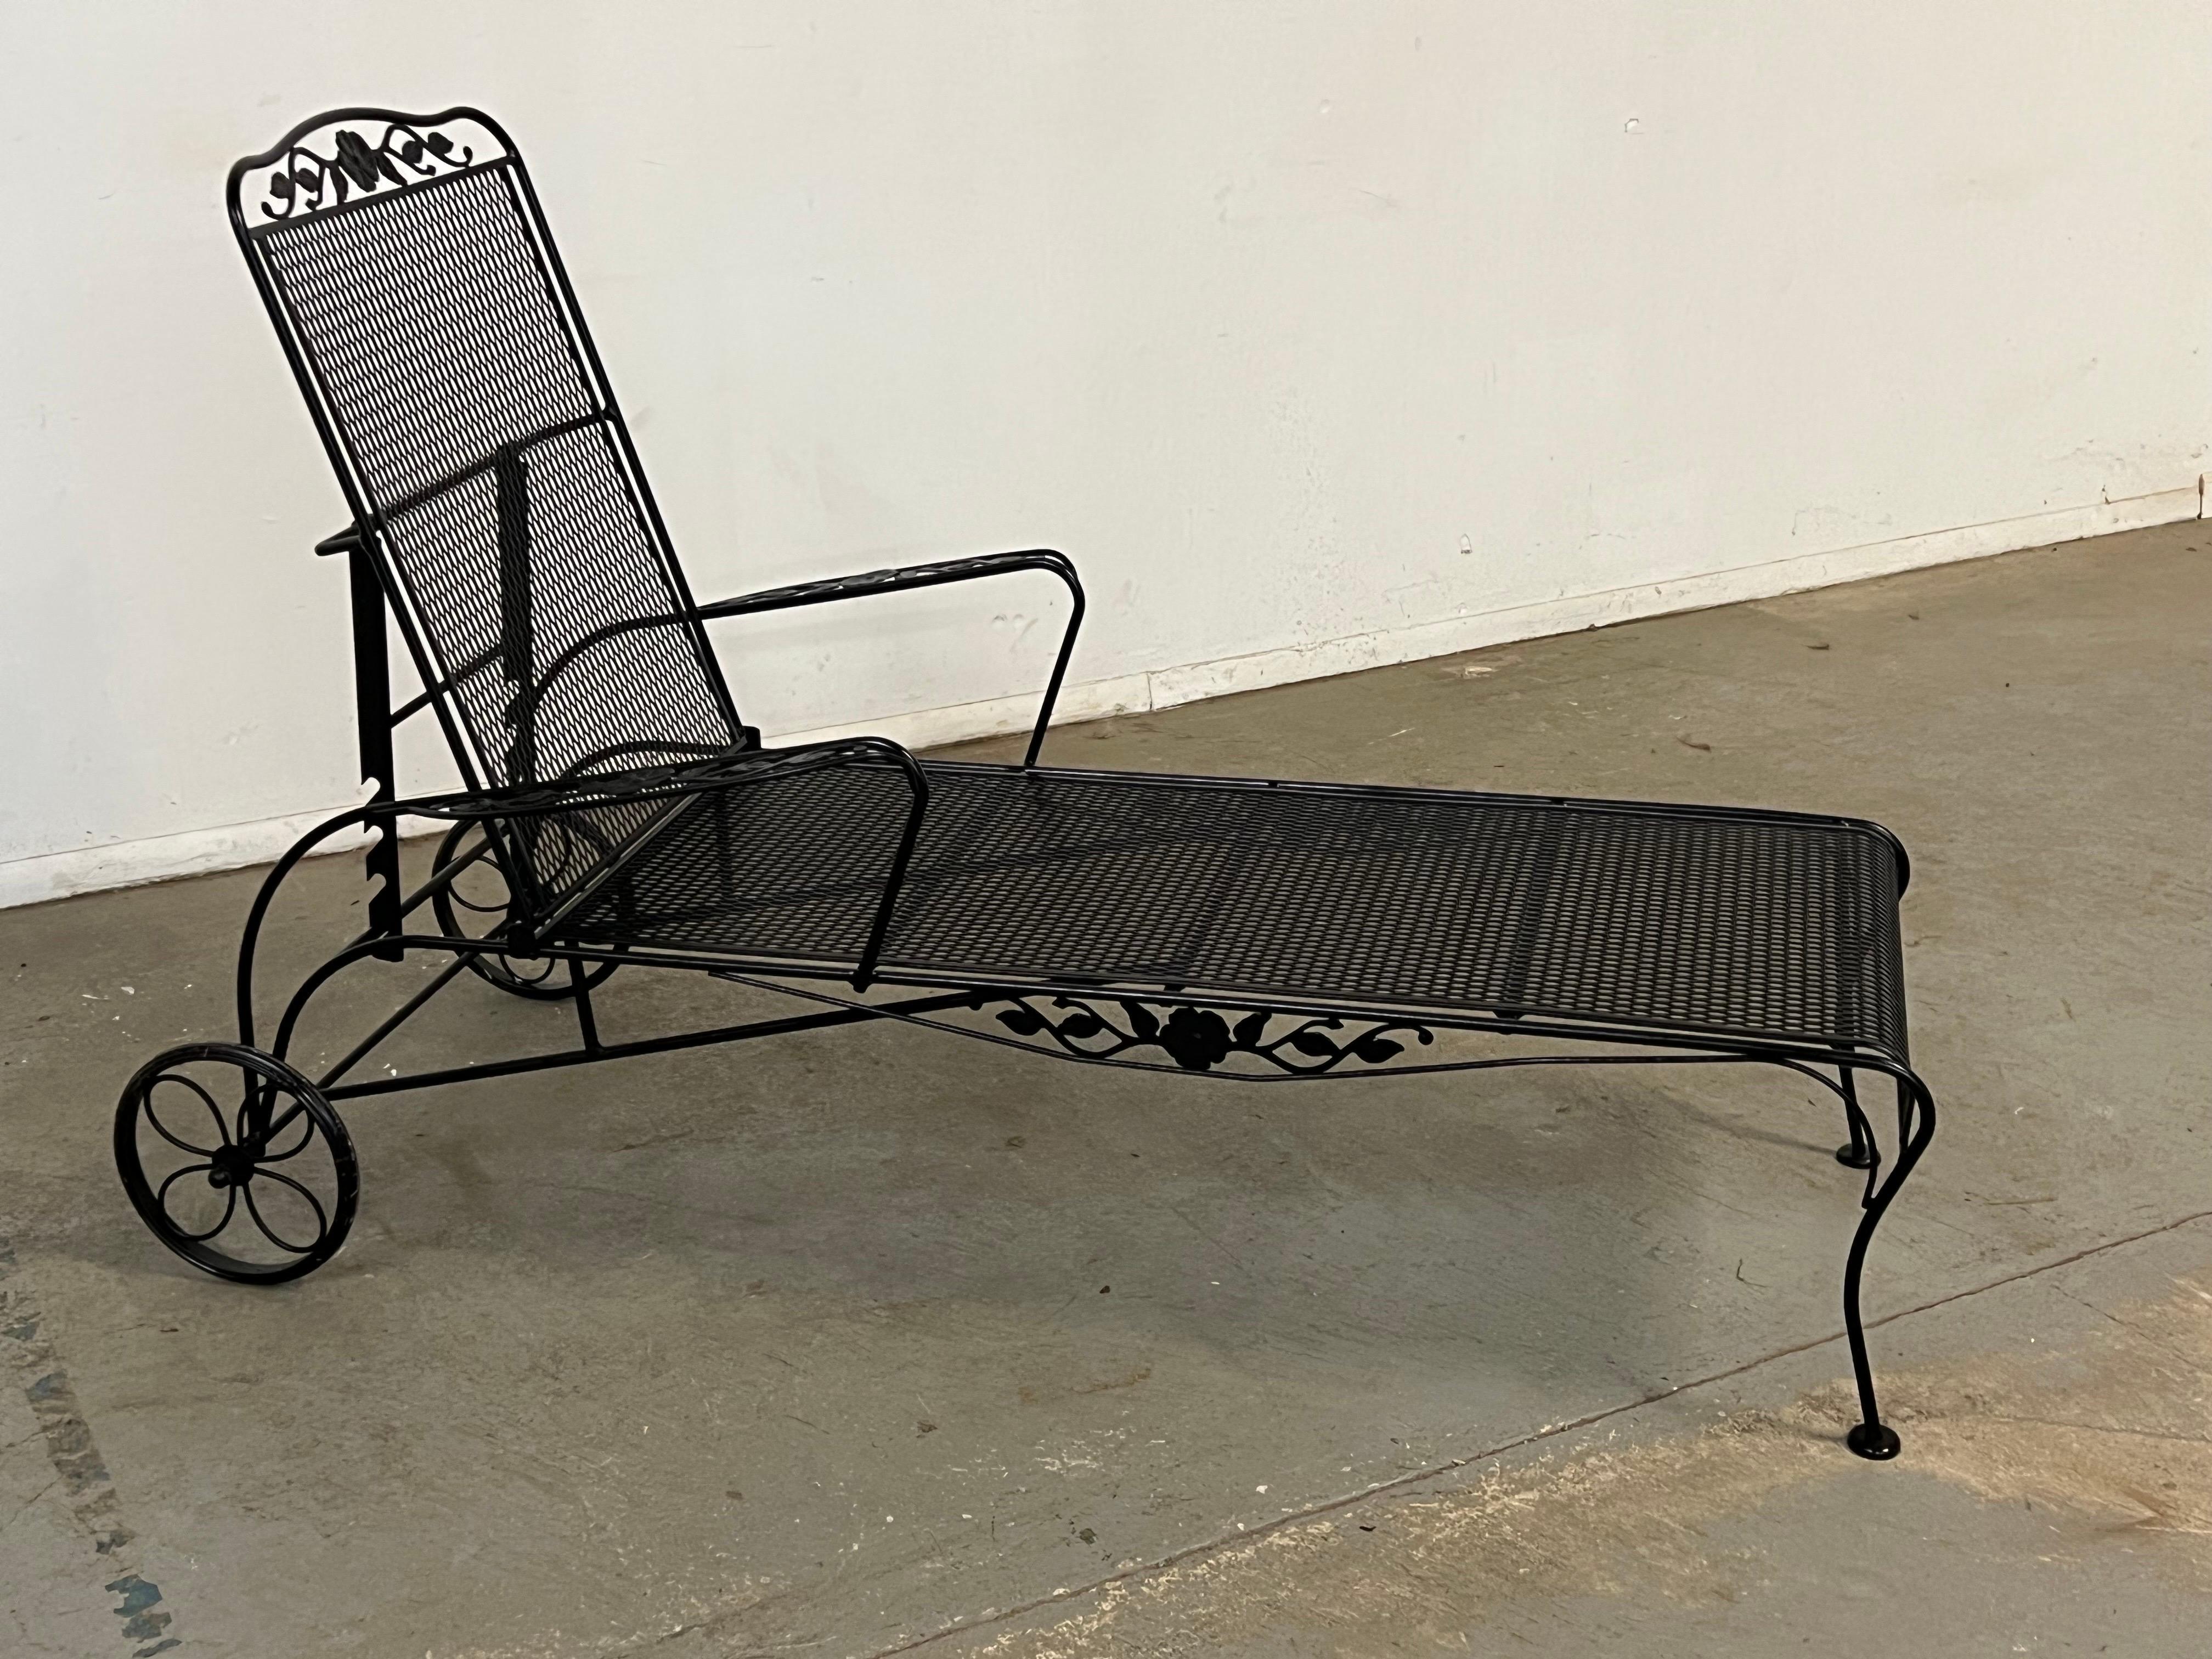  Woodard Stil Outdoor Eisen Chaise Lounge Stuhl

Angeboten wird ein Chaiselongue-Sessel im floralen Woodard-Stil. Dieser Stuhl befindet sich in einem insgesamt guten strukturellen Zustand mit Farbabplatzungen und Alterserscheinungen. Mit zwei